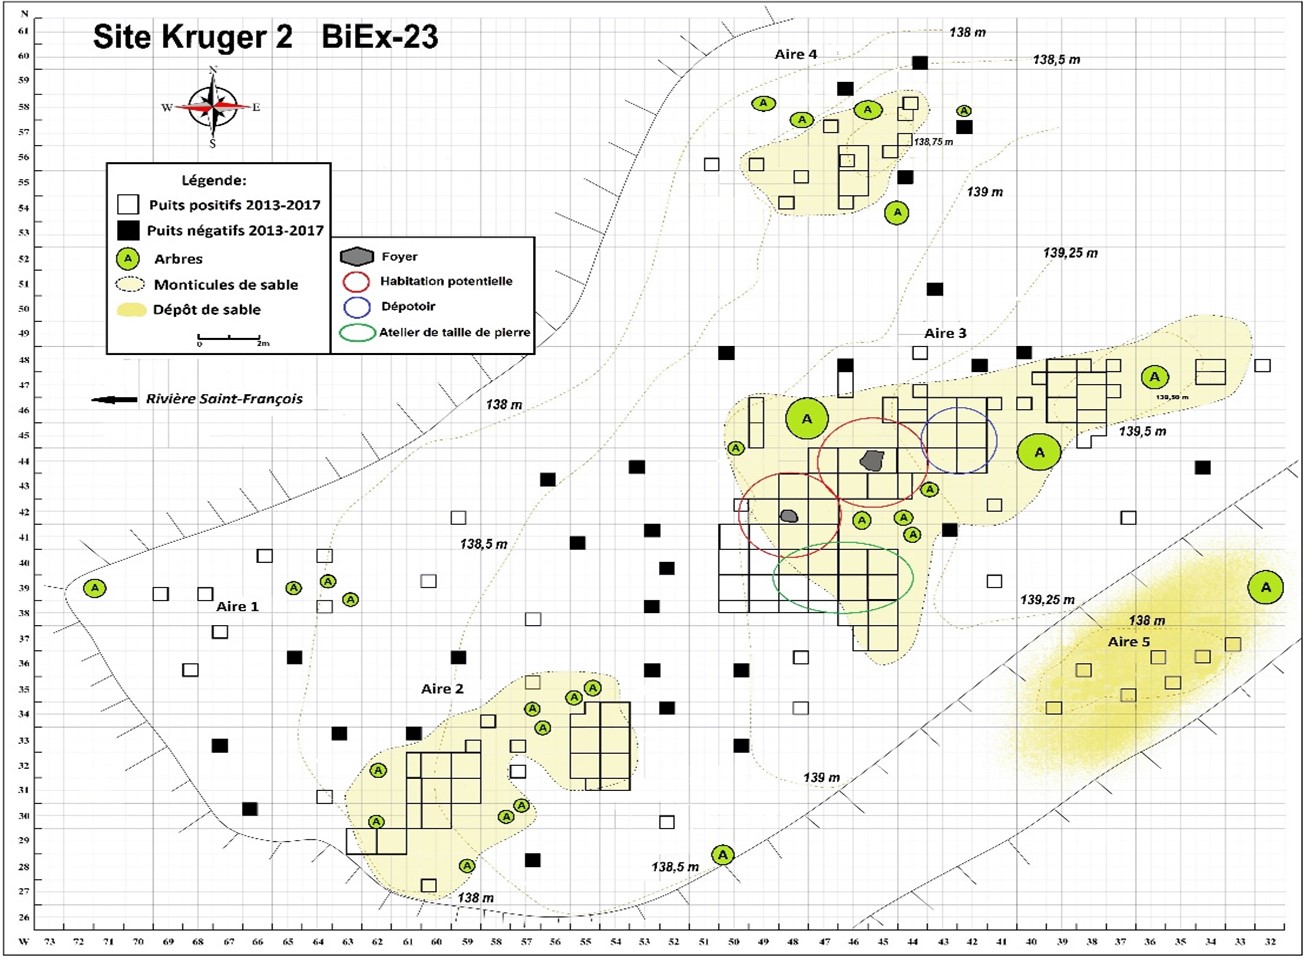 Plan quadrillé du site Kruger 2 BiEx-23 avec courbes topographiques des cinq aires de sites fouillés. Les icones de la légende démontent : des carrés blancs (puits positifs); des carrés noirs (puits négatifs); des cercles verts (arbres) et des taches jaunes (dépôts de sable).